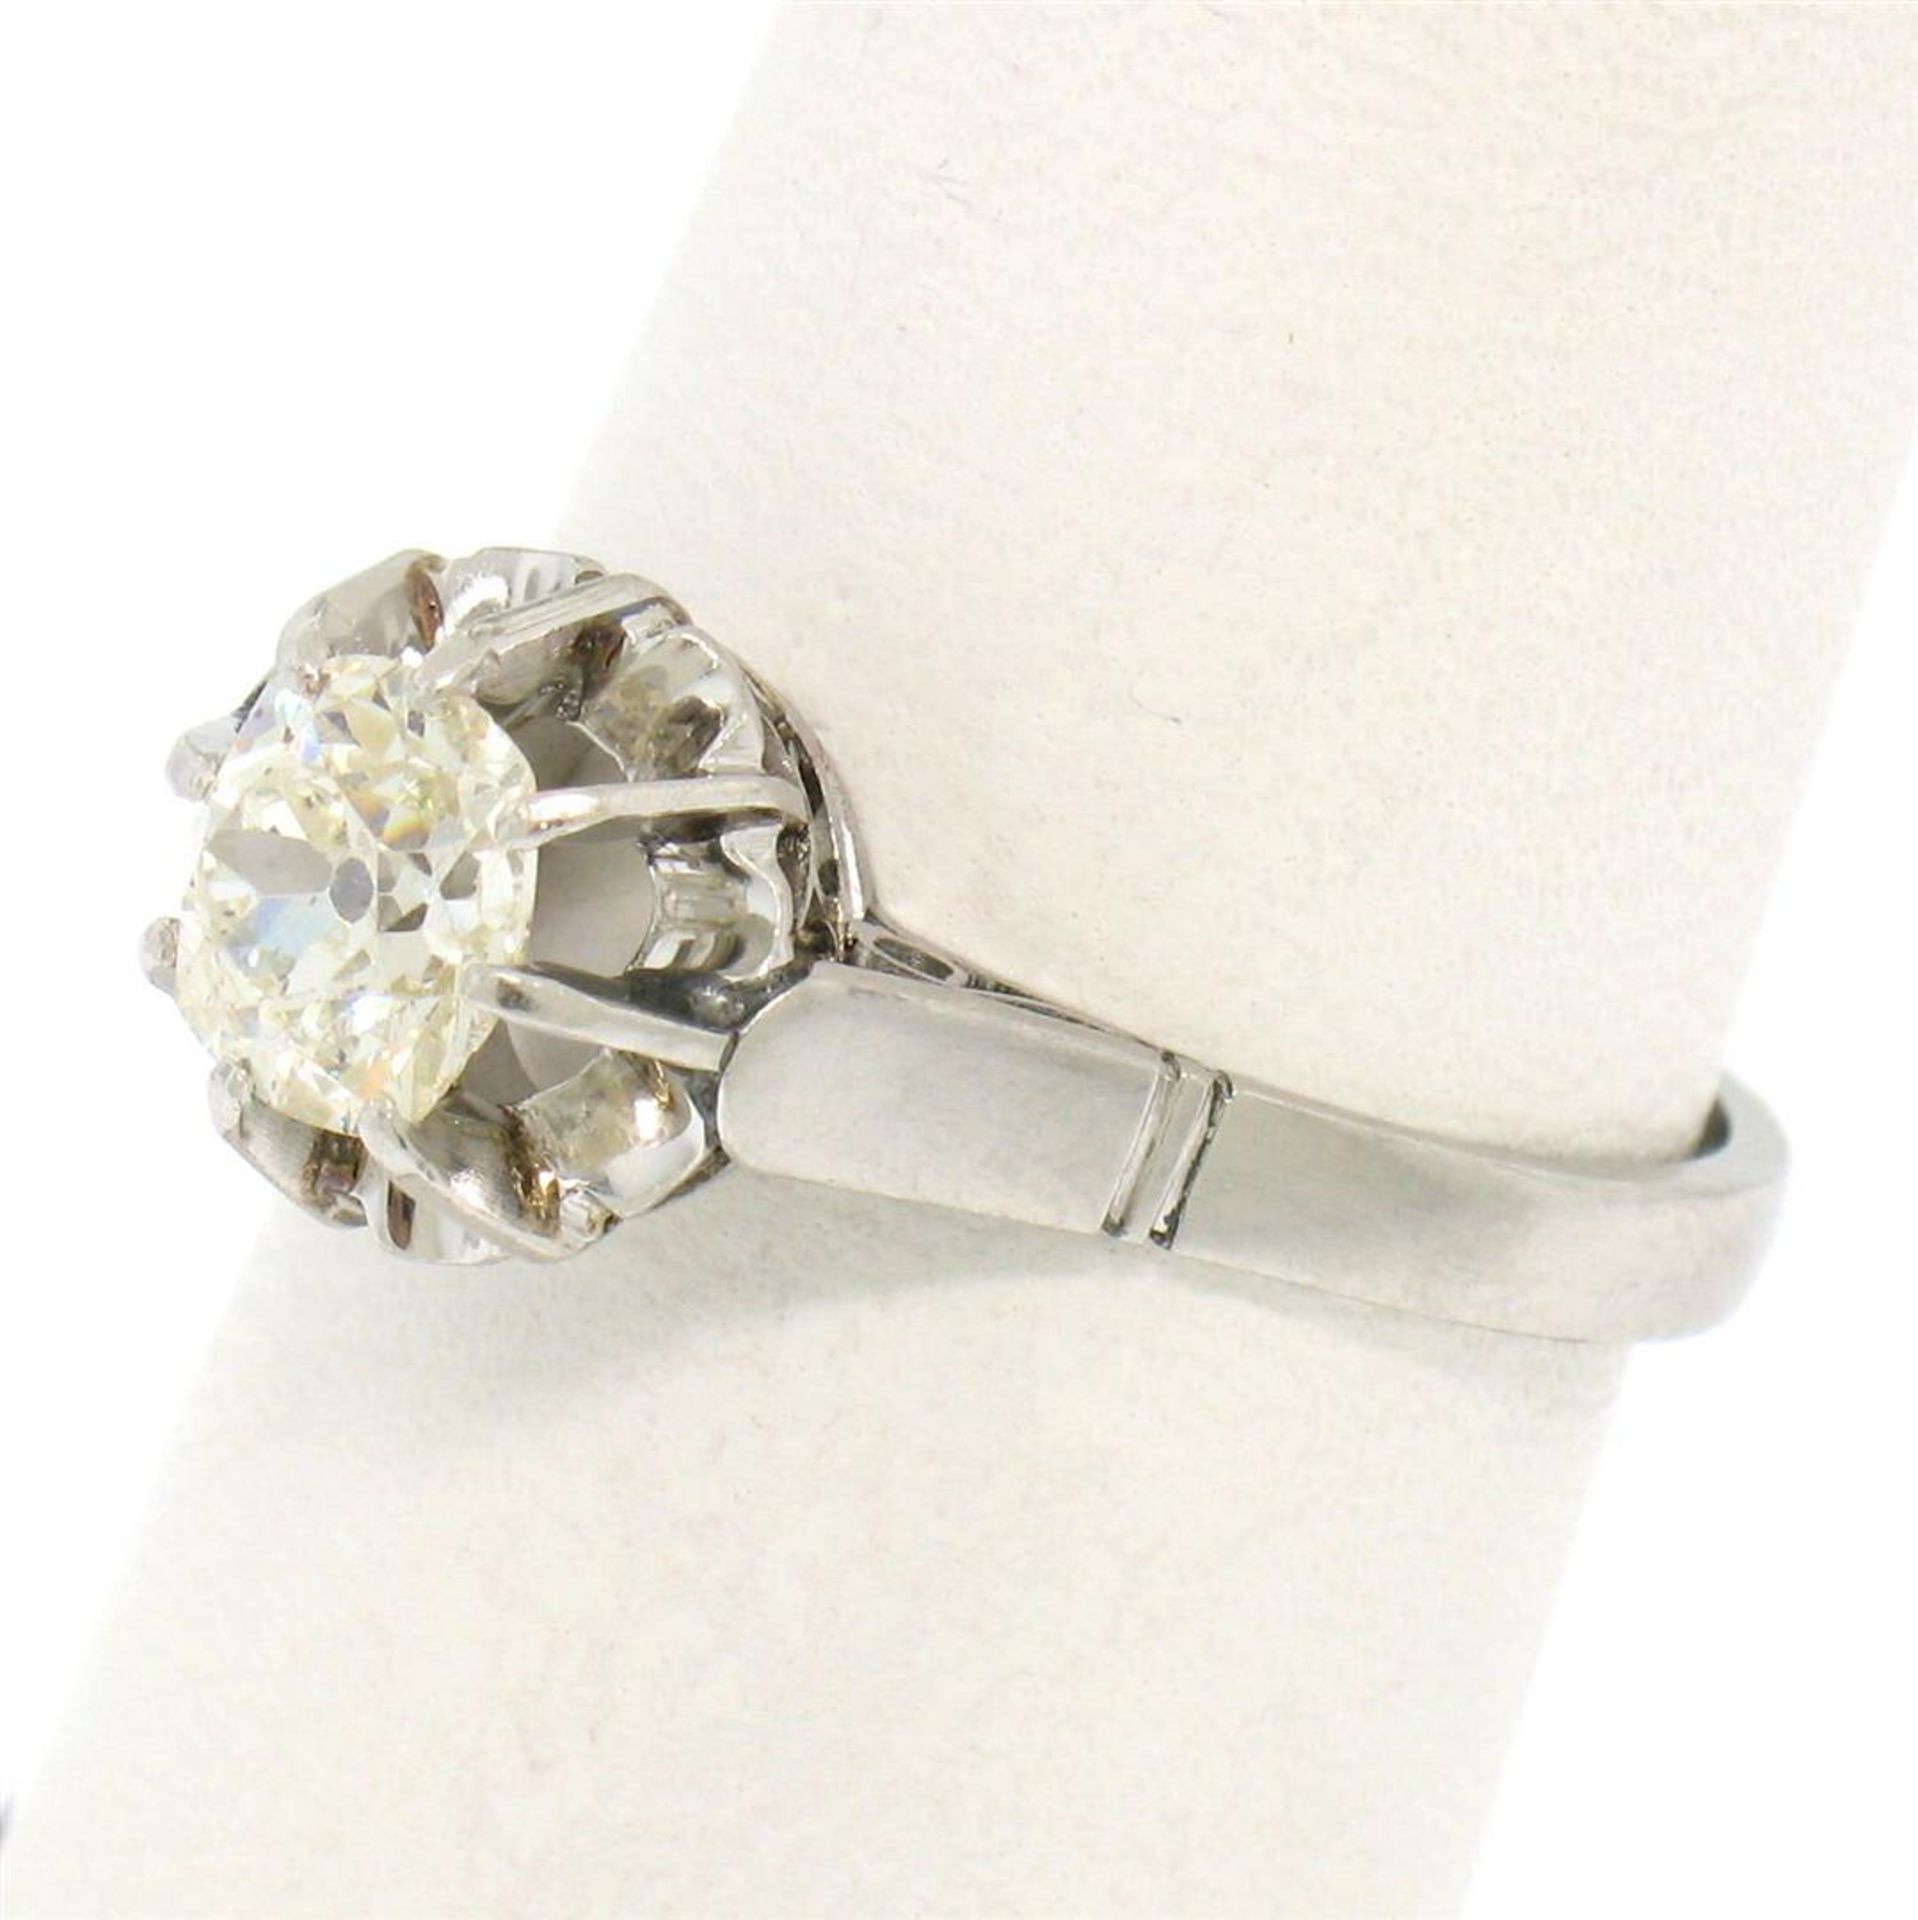 Antique Art Deco Platinum 0.78ct Old Mine Cut Diamond Filigree Engagement Ring - Image 7 of 9